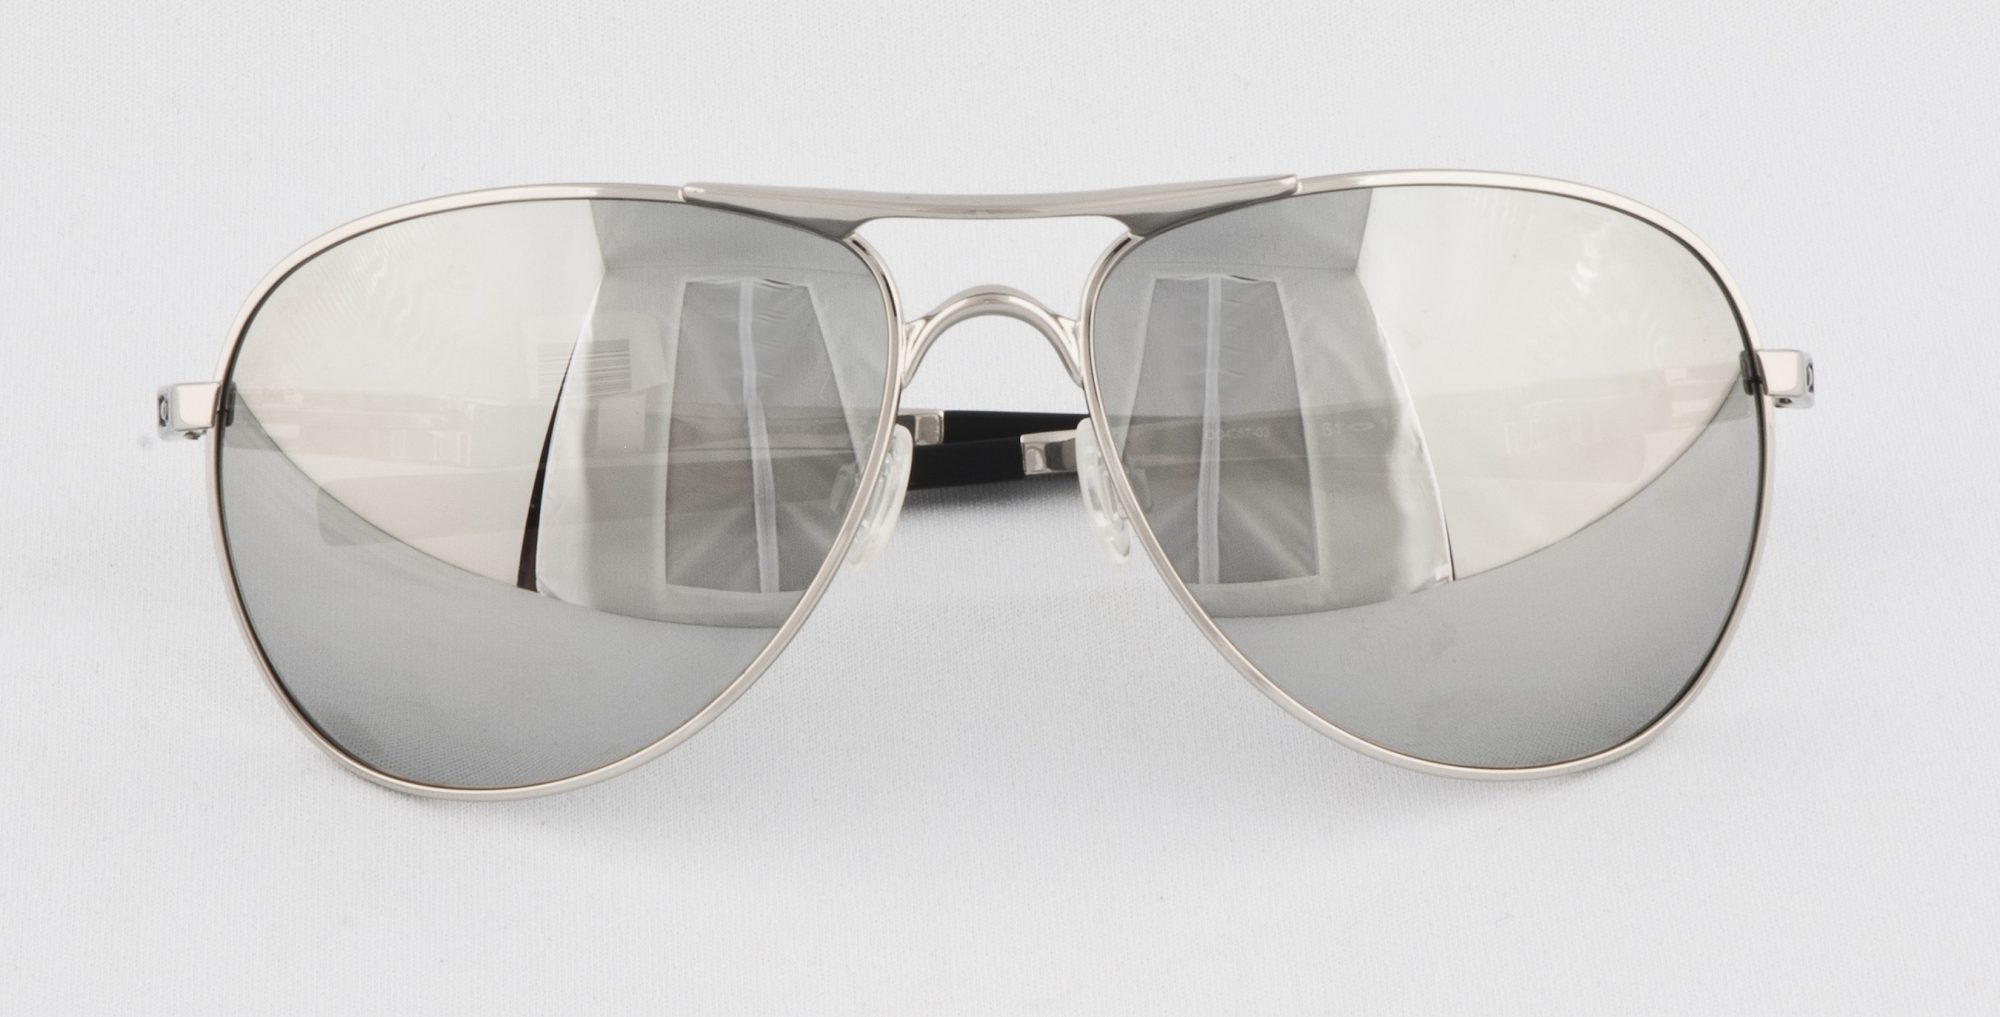 Men's Plaintiff Oakley sunglasses,$195, from Eye to Eye Optometry (9678 142 St., 780-423-2113).